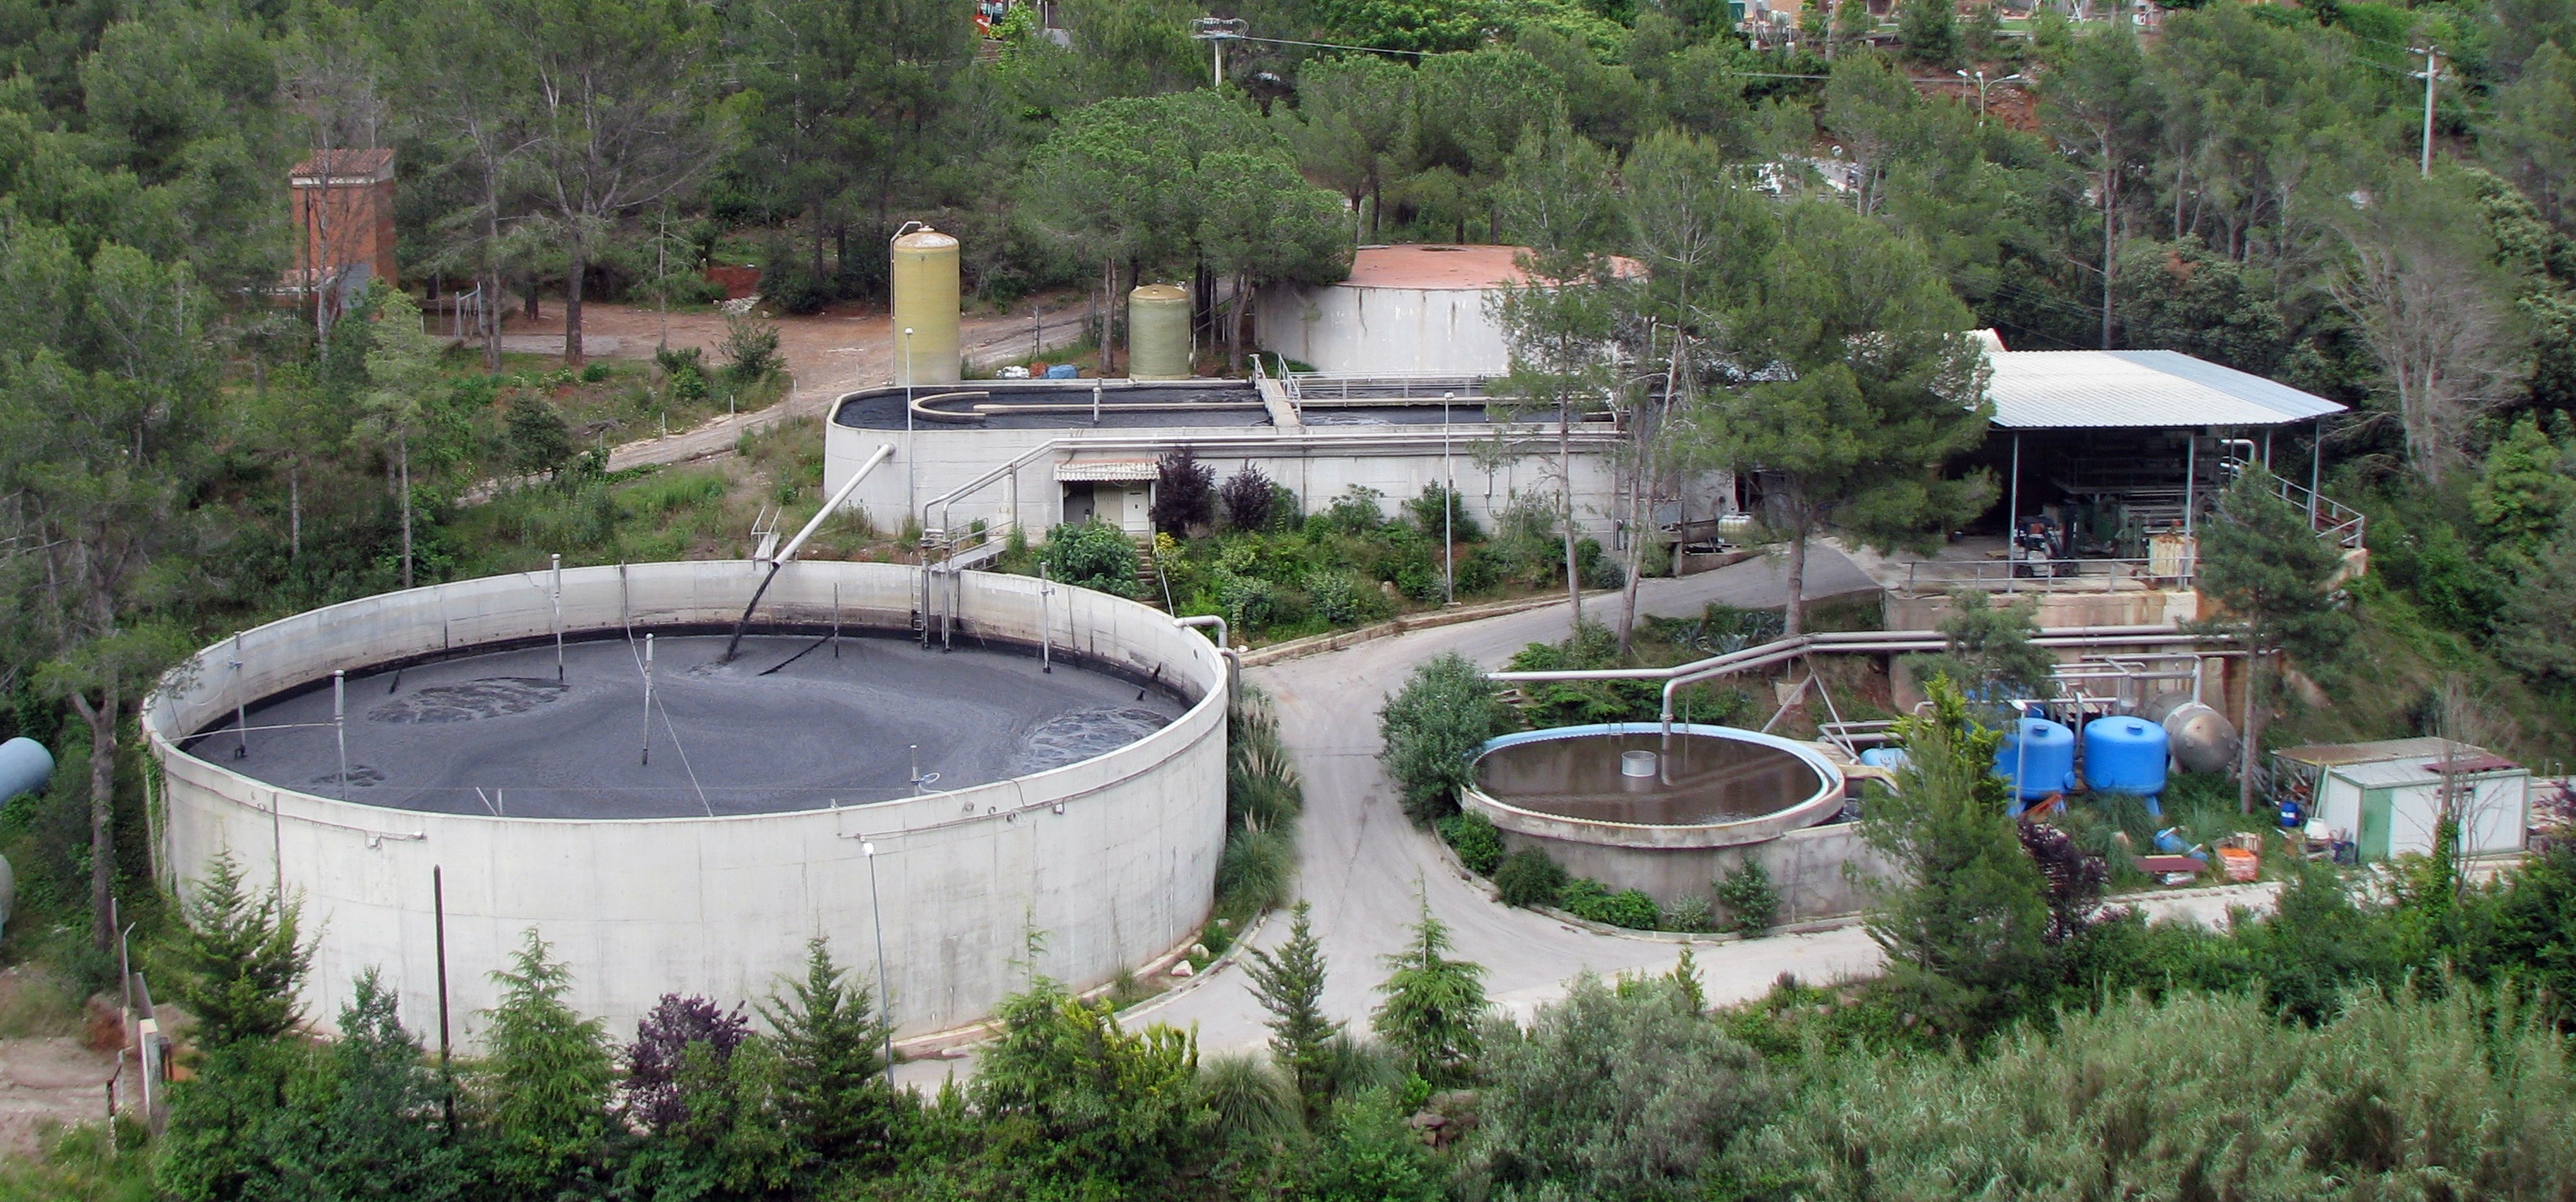 Avant d'être rejetées, les eaux usées sont traitées dans des cuves (à l’image, à Castellar del Vallès, en Espagne). © Xavigivax, cc by sa 3.0